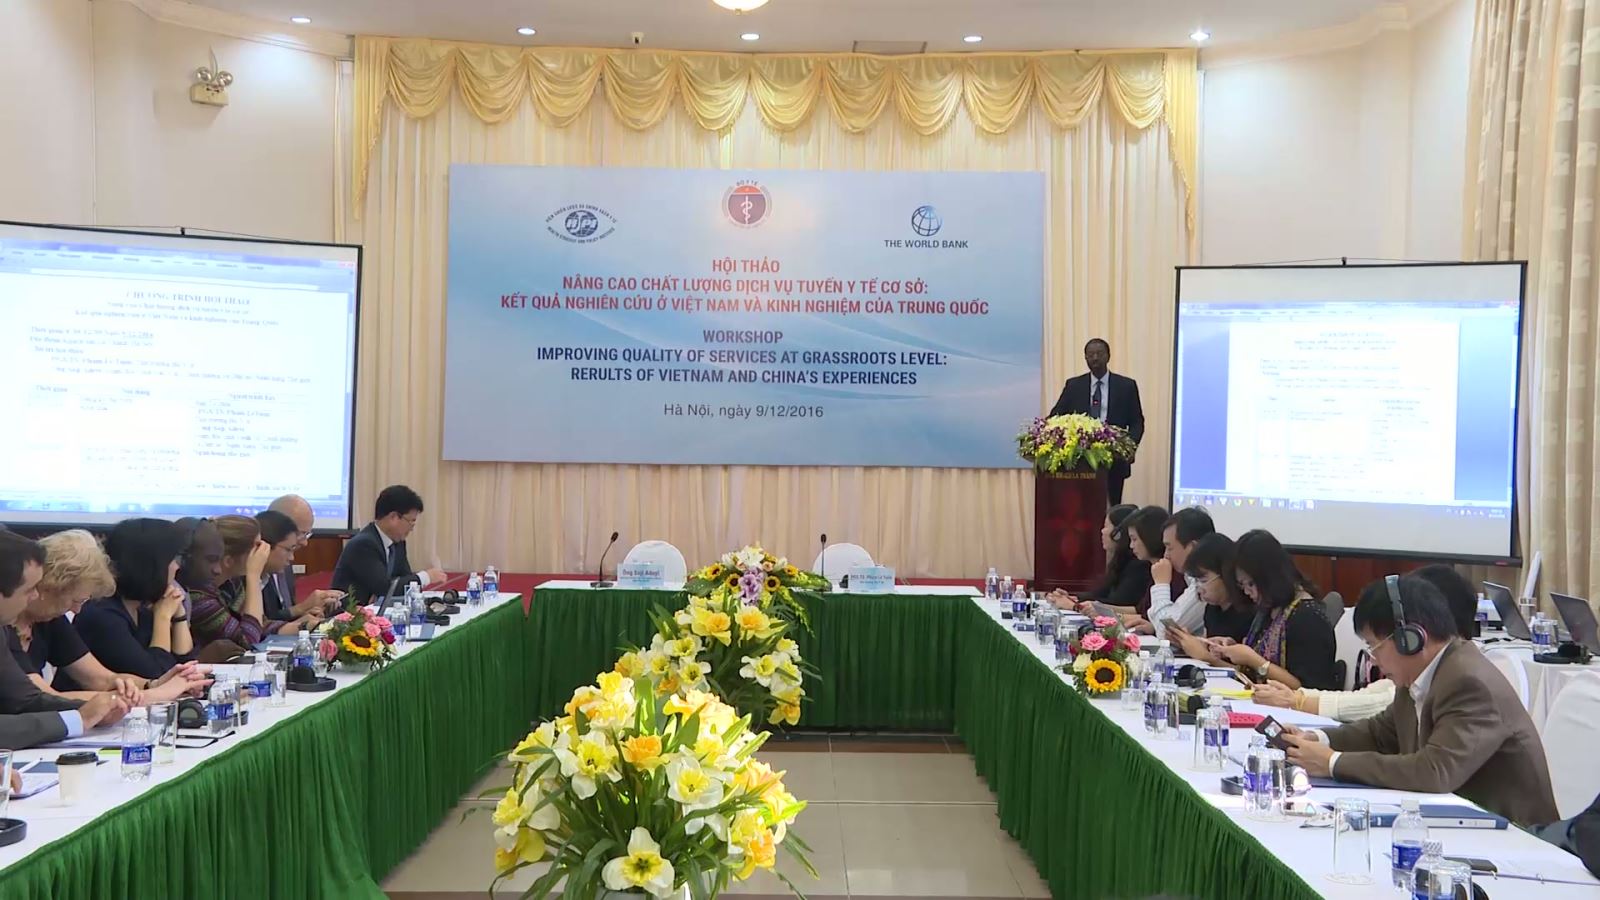 Hội thảo nâng cao chất lượng dịch vụ y tế cơ sở: Kết quả nghiên cứu ở Việt Nam và kinh nghiệm của Trung Quốc